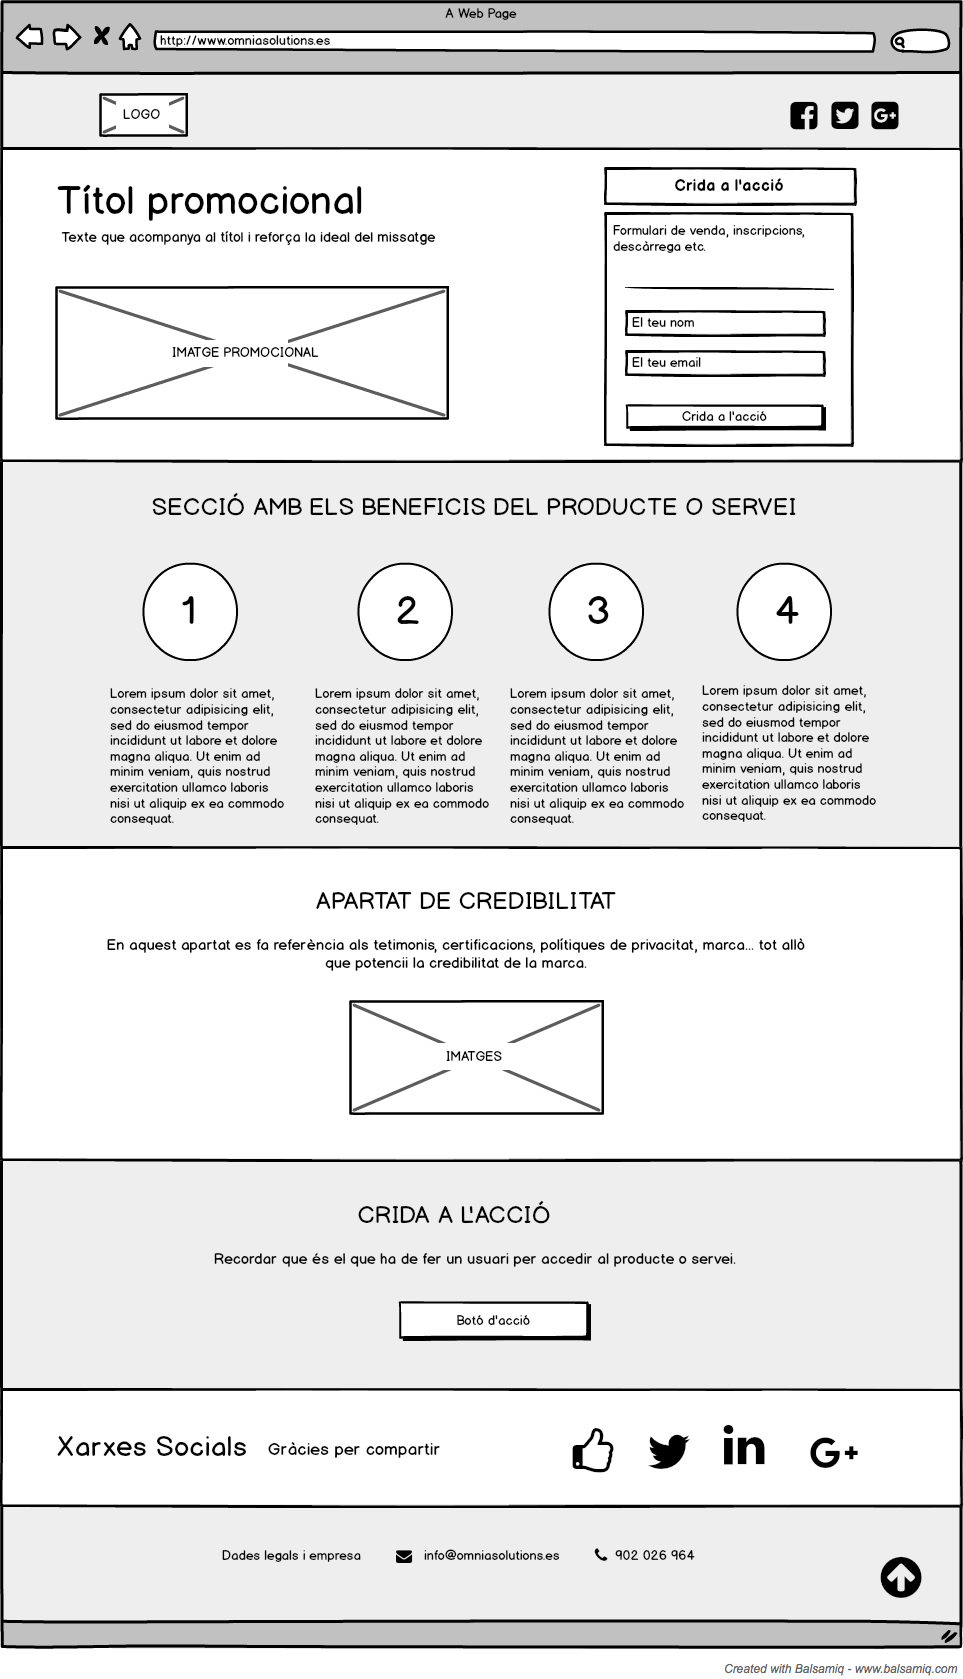 Elements de disseny d'una Landing Page